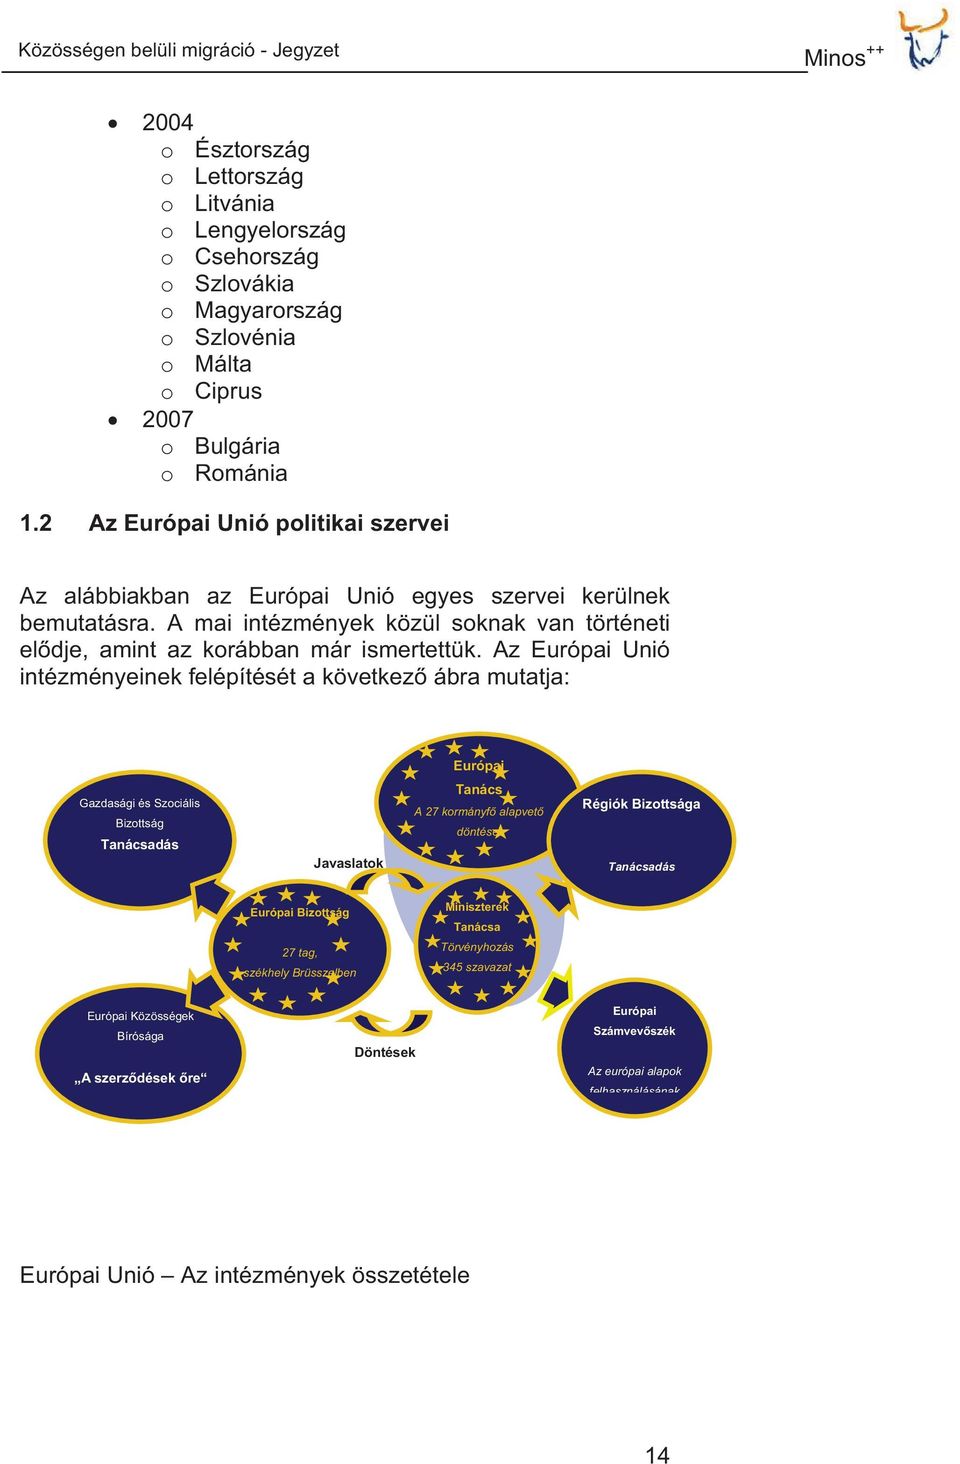 Az Európai Unió intézményeinek felépítését a következ ábra mutatja: Európai Gazdasági és Szociális Bizottság Tanácsadás Javaslatok Tanács A 27 kormányf alapvet döntései Régiók Bizottsága Tanácsadás